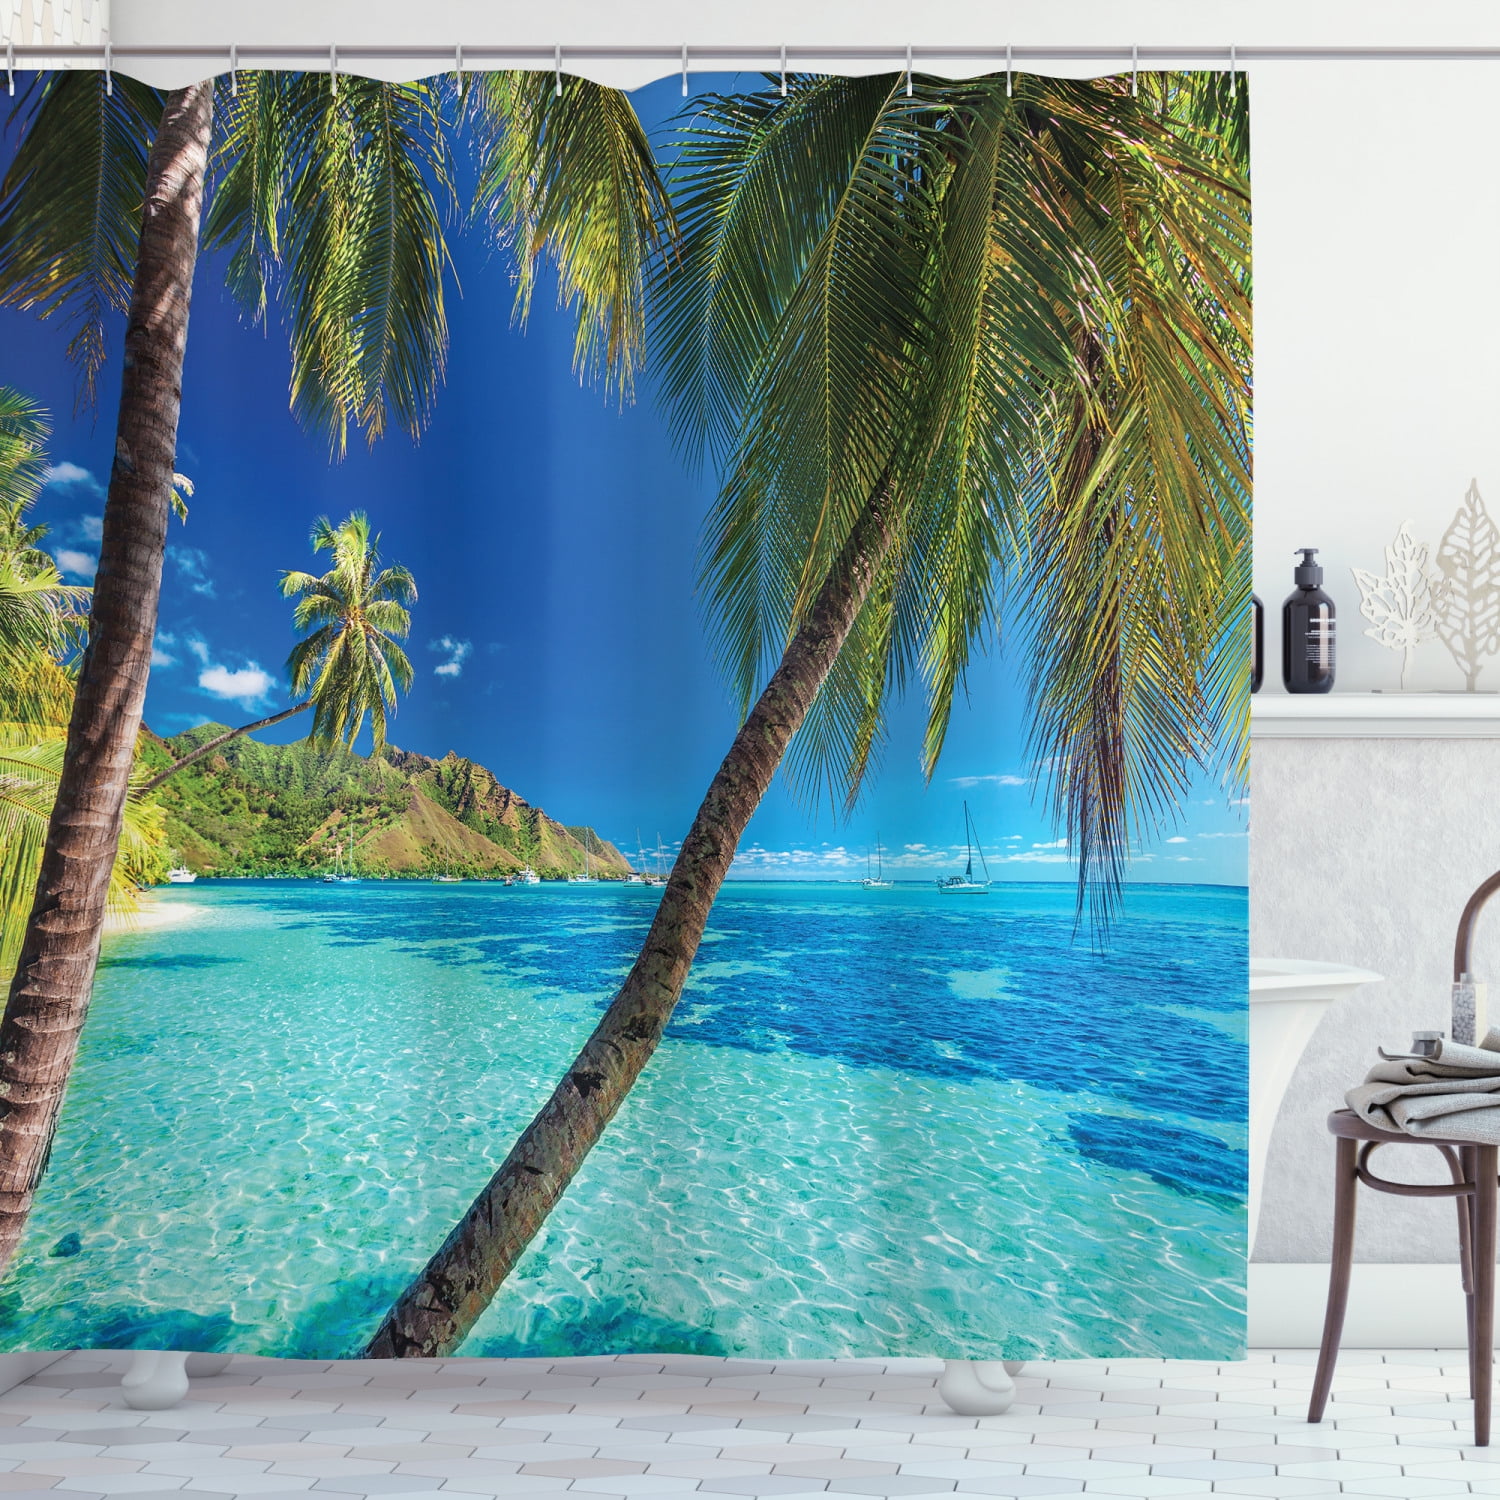 Tropical Coconut Tree Shower Curtain Summer Beach Bathroom Decor Fabric & 12hook